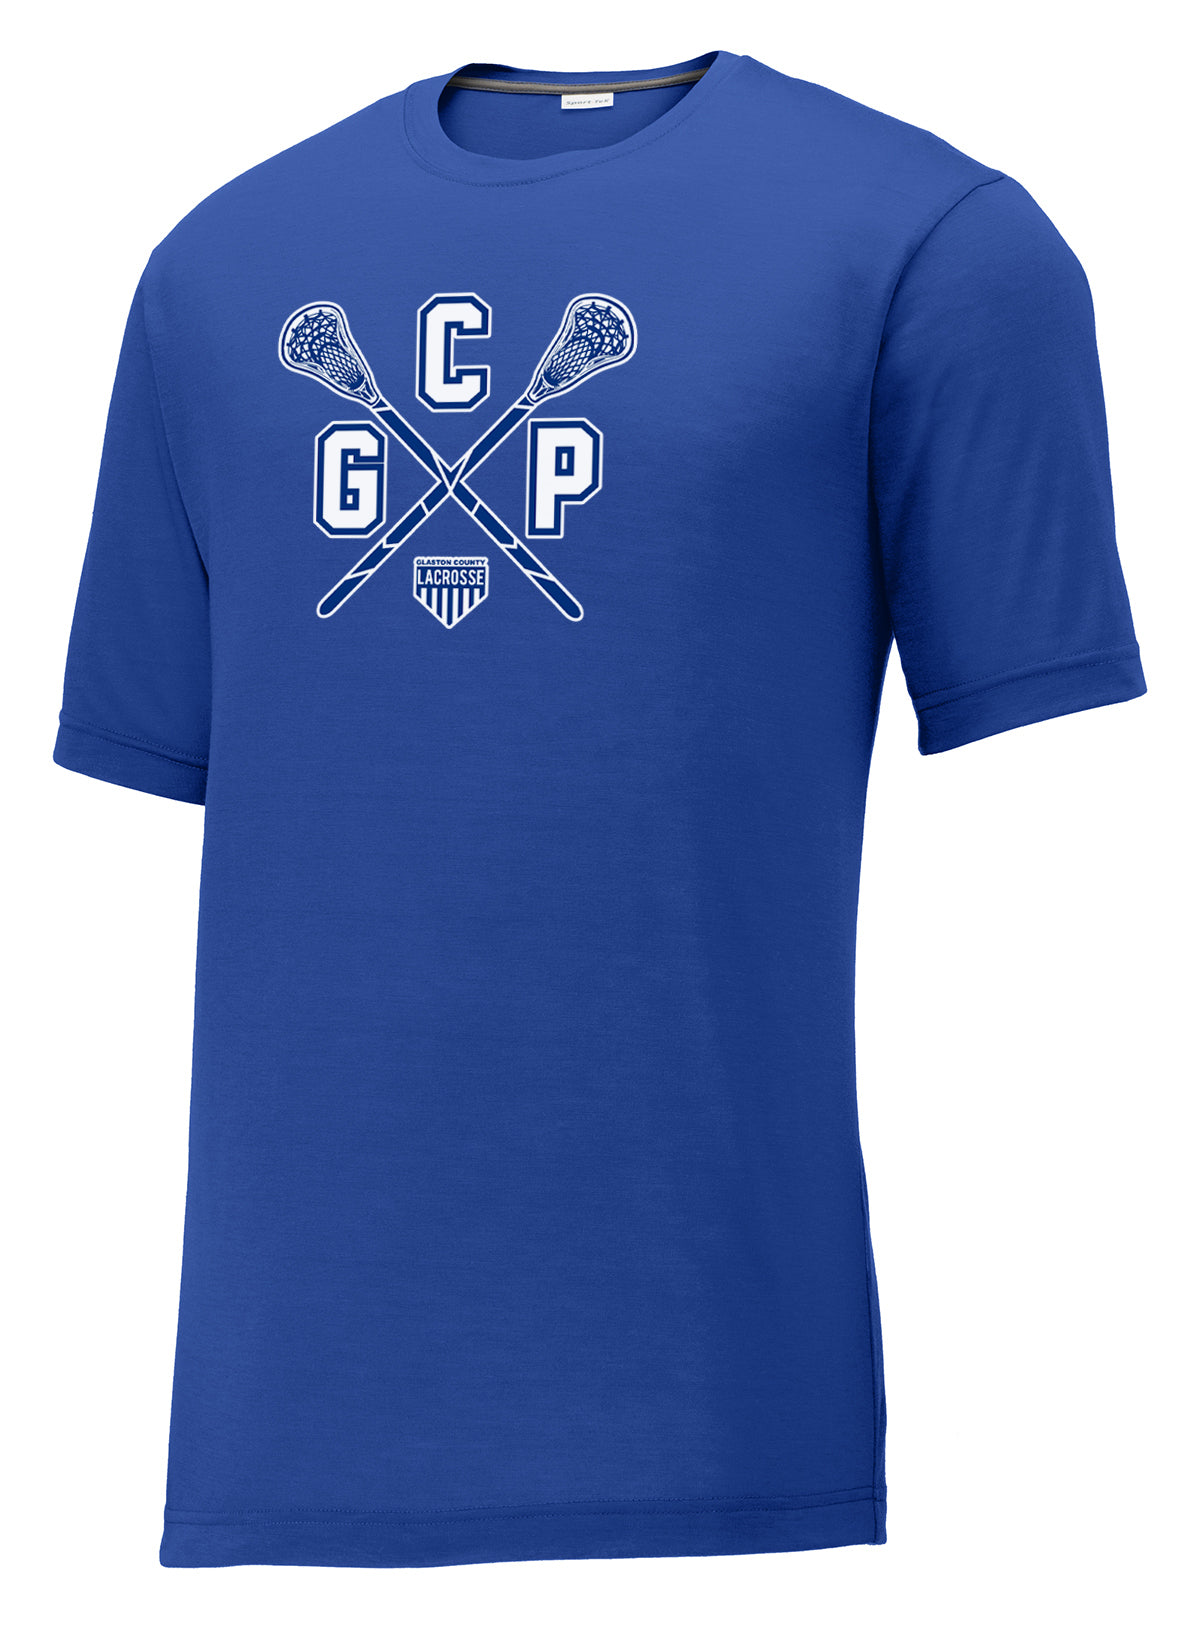 GCP Lacrosse Royal CottonTouch Performance T-Shirt